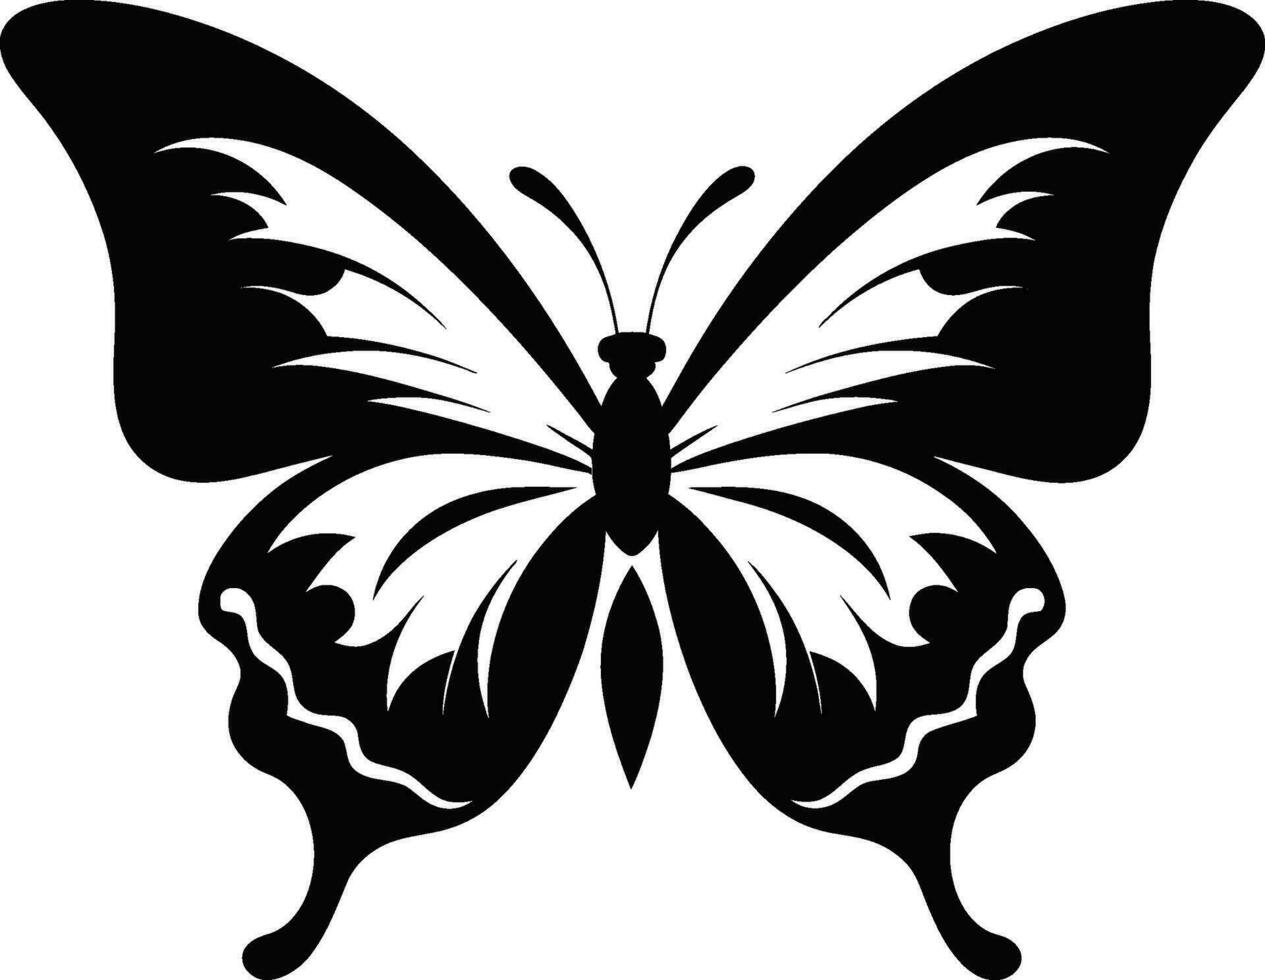 Butterflys Beauty Onyx Emblem Intricate Flight Symbol Dark Delightful Majesty vector